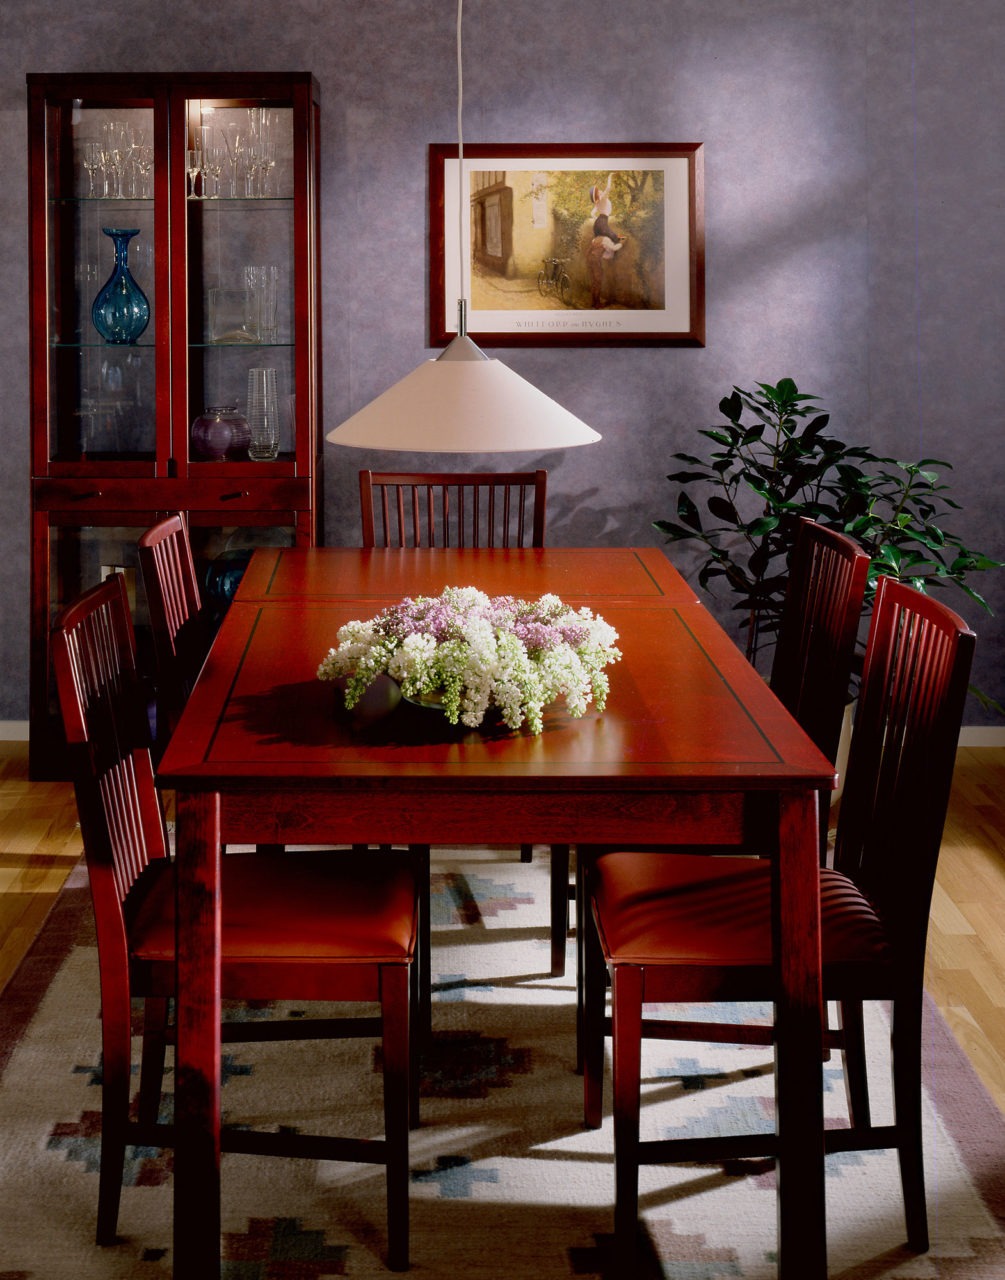 Salle à manger avec une longue table élégante et des chaises en bois brun-rouge, modèles STOCKHOLM, sur un tapis à motifs.